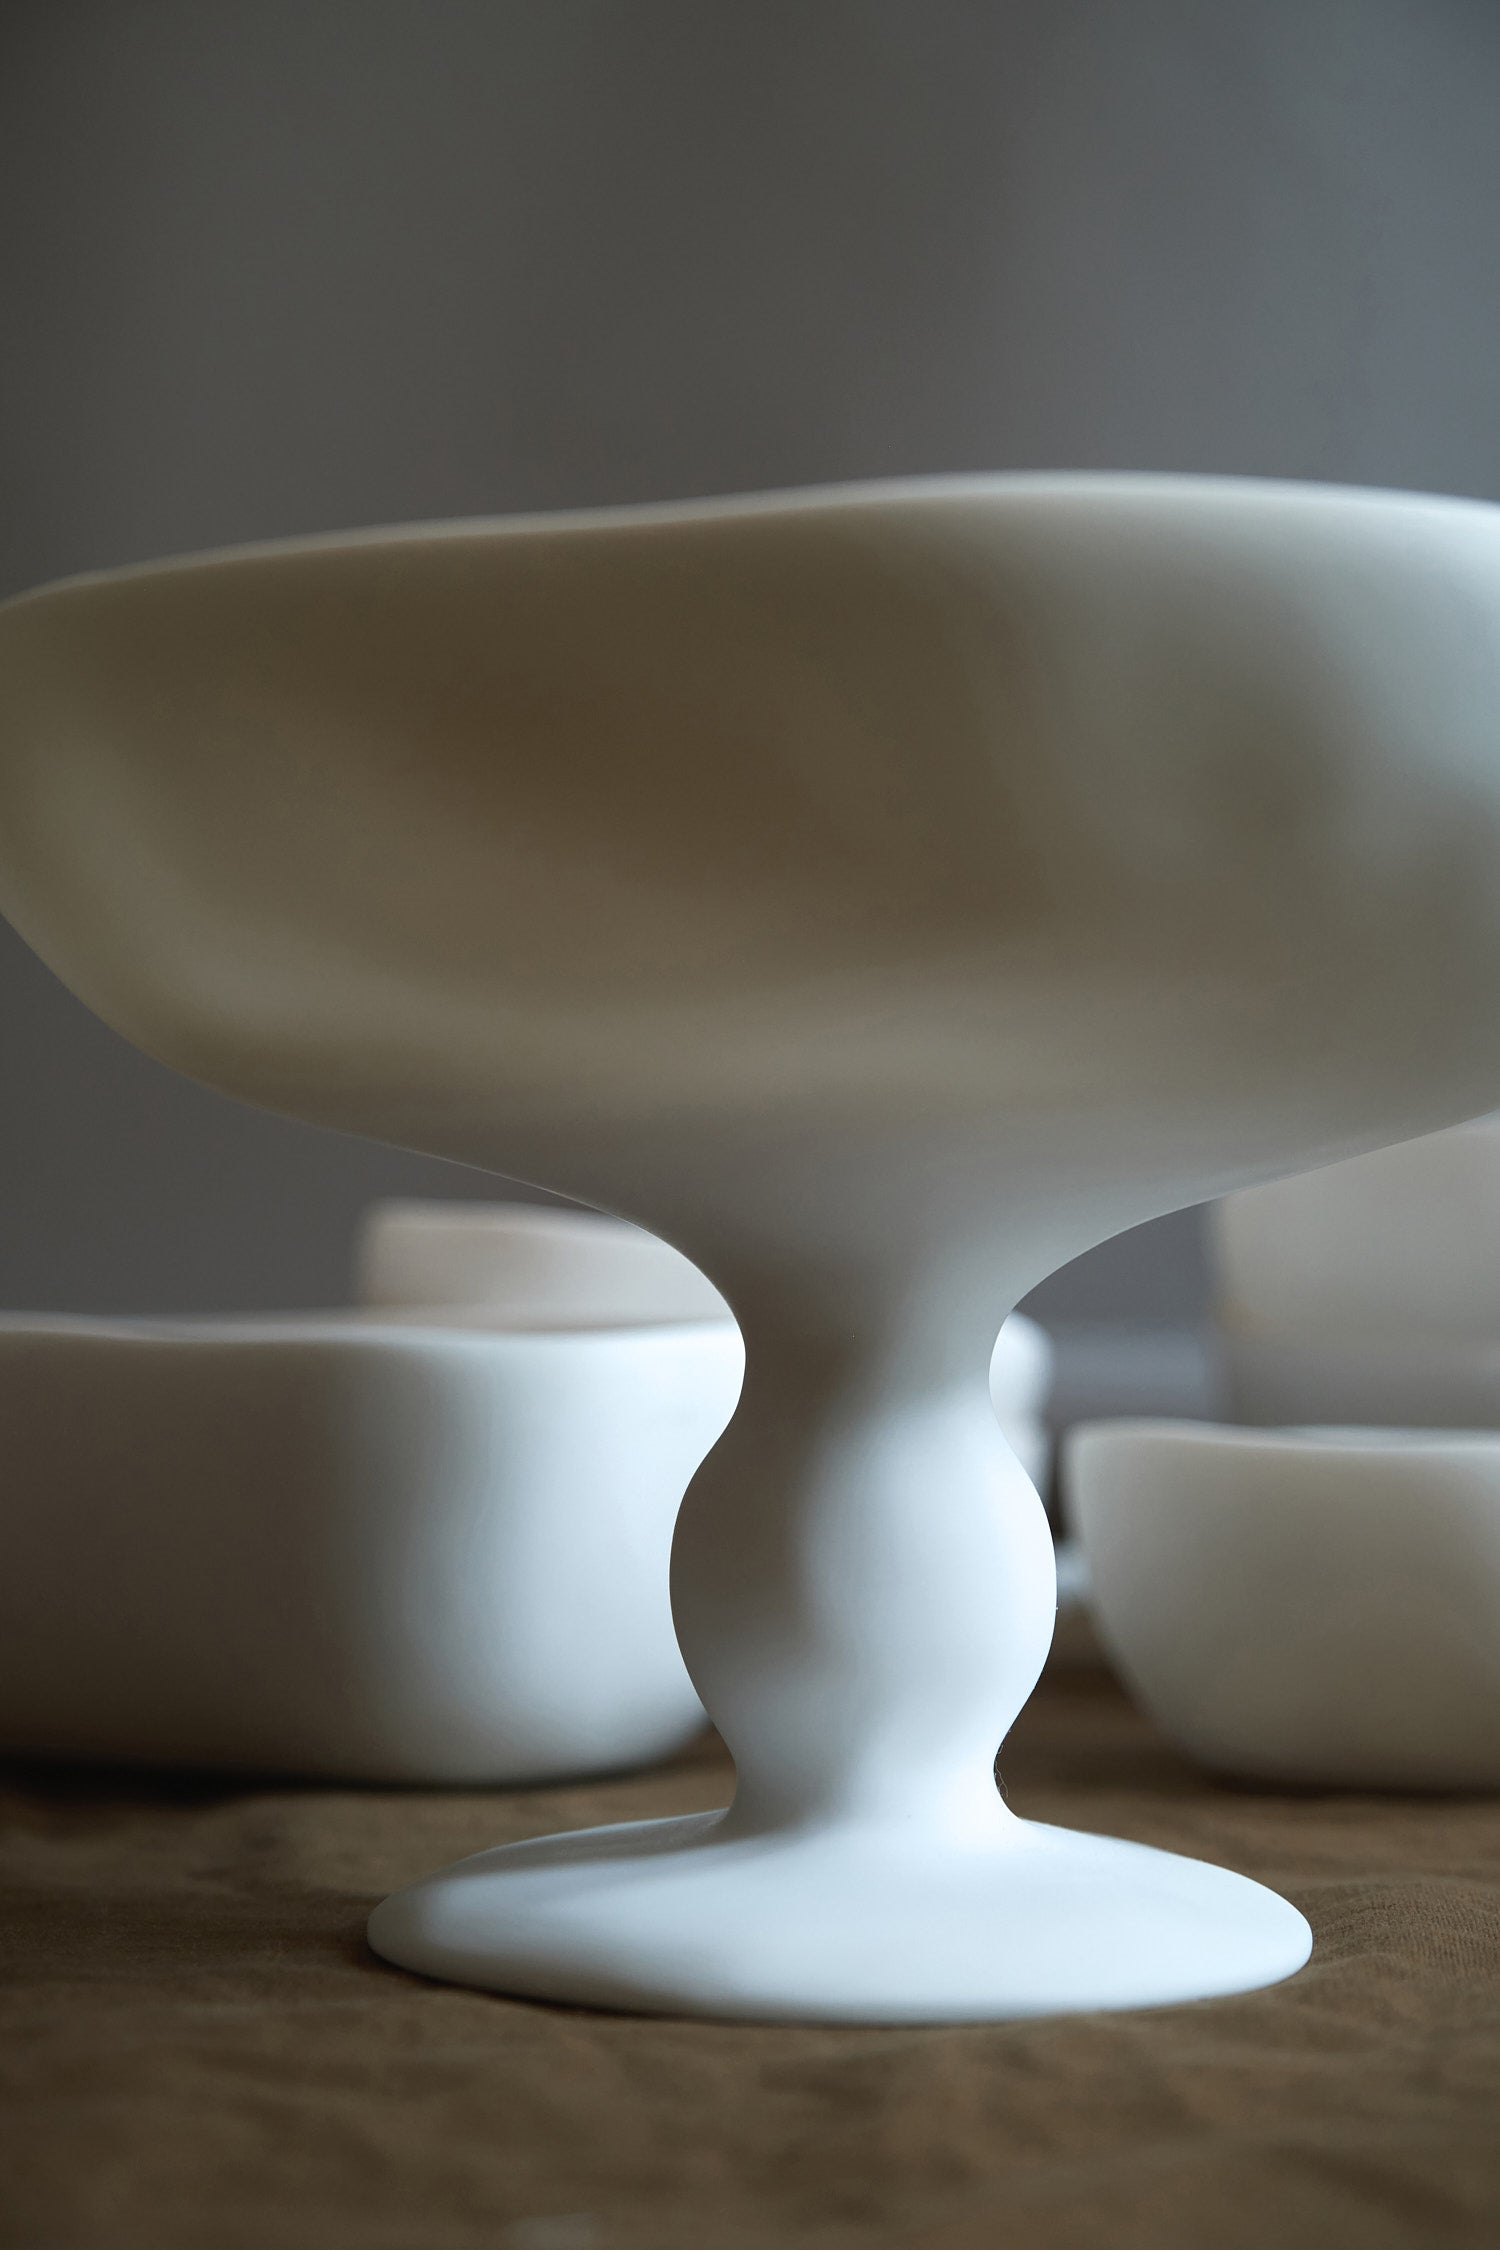 Tina frey pedestal bowl in white